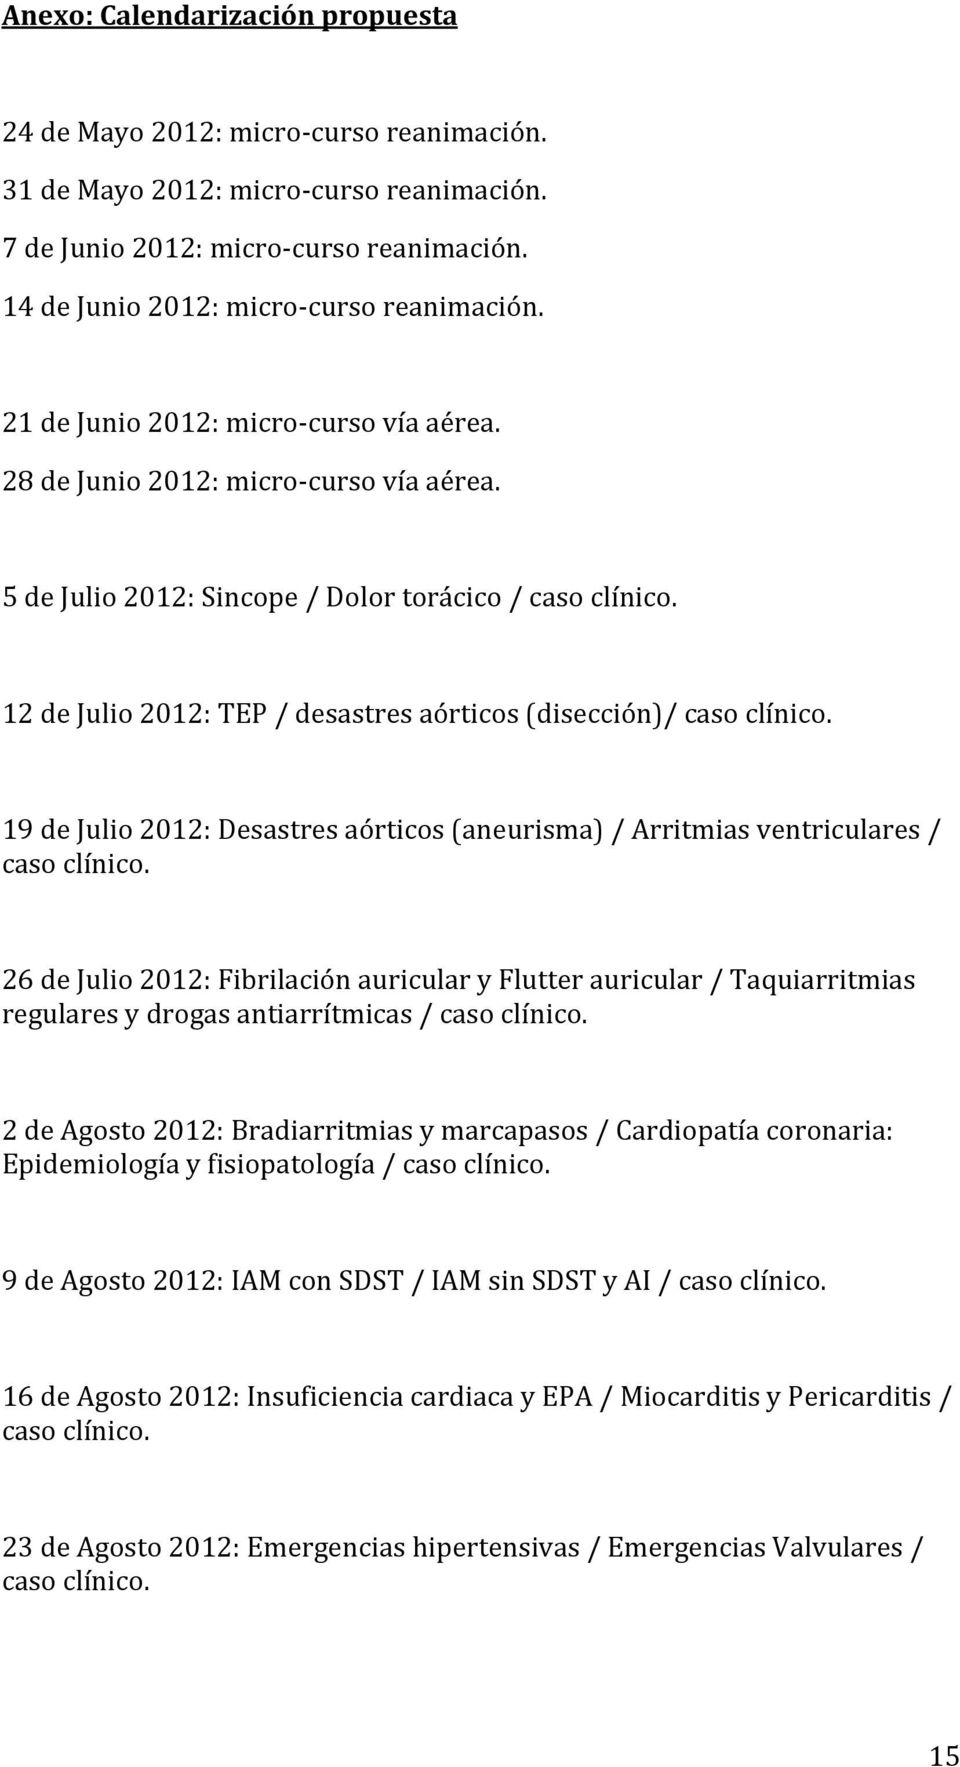 12 de Julio 2012: TEP / desastres aórticos (disección)/ caso clínico. 19 de Julio 2012: Desastres aórticos (aneurisma) / Arritmias ventriculares / caso clínico.